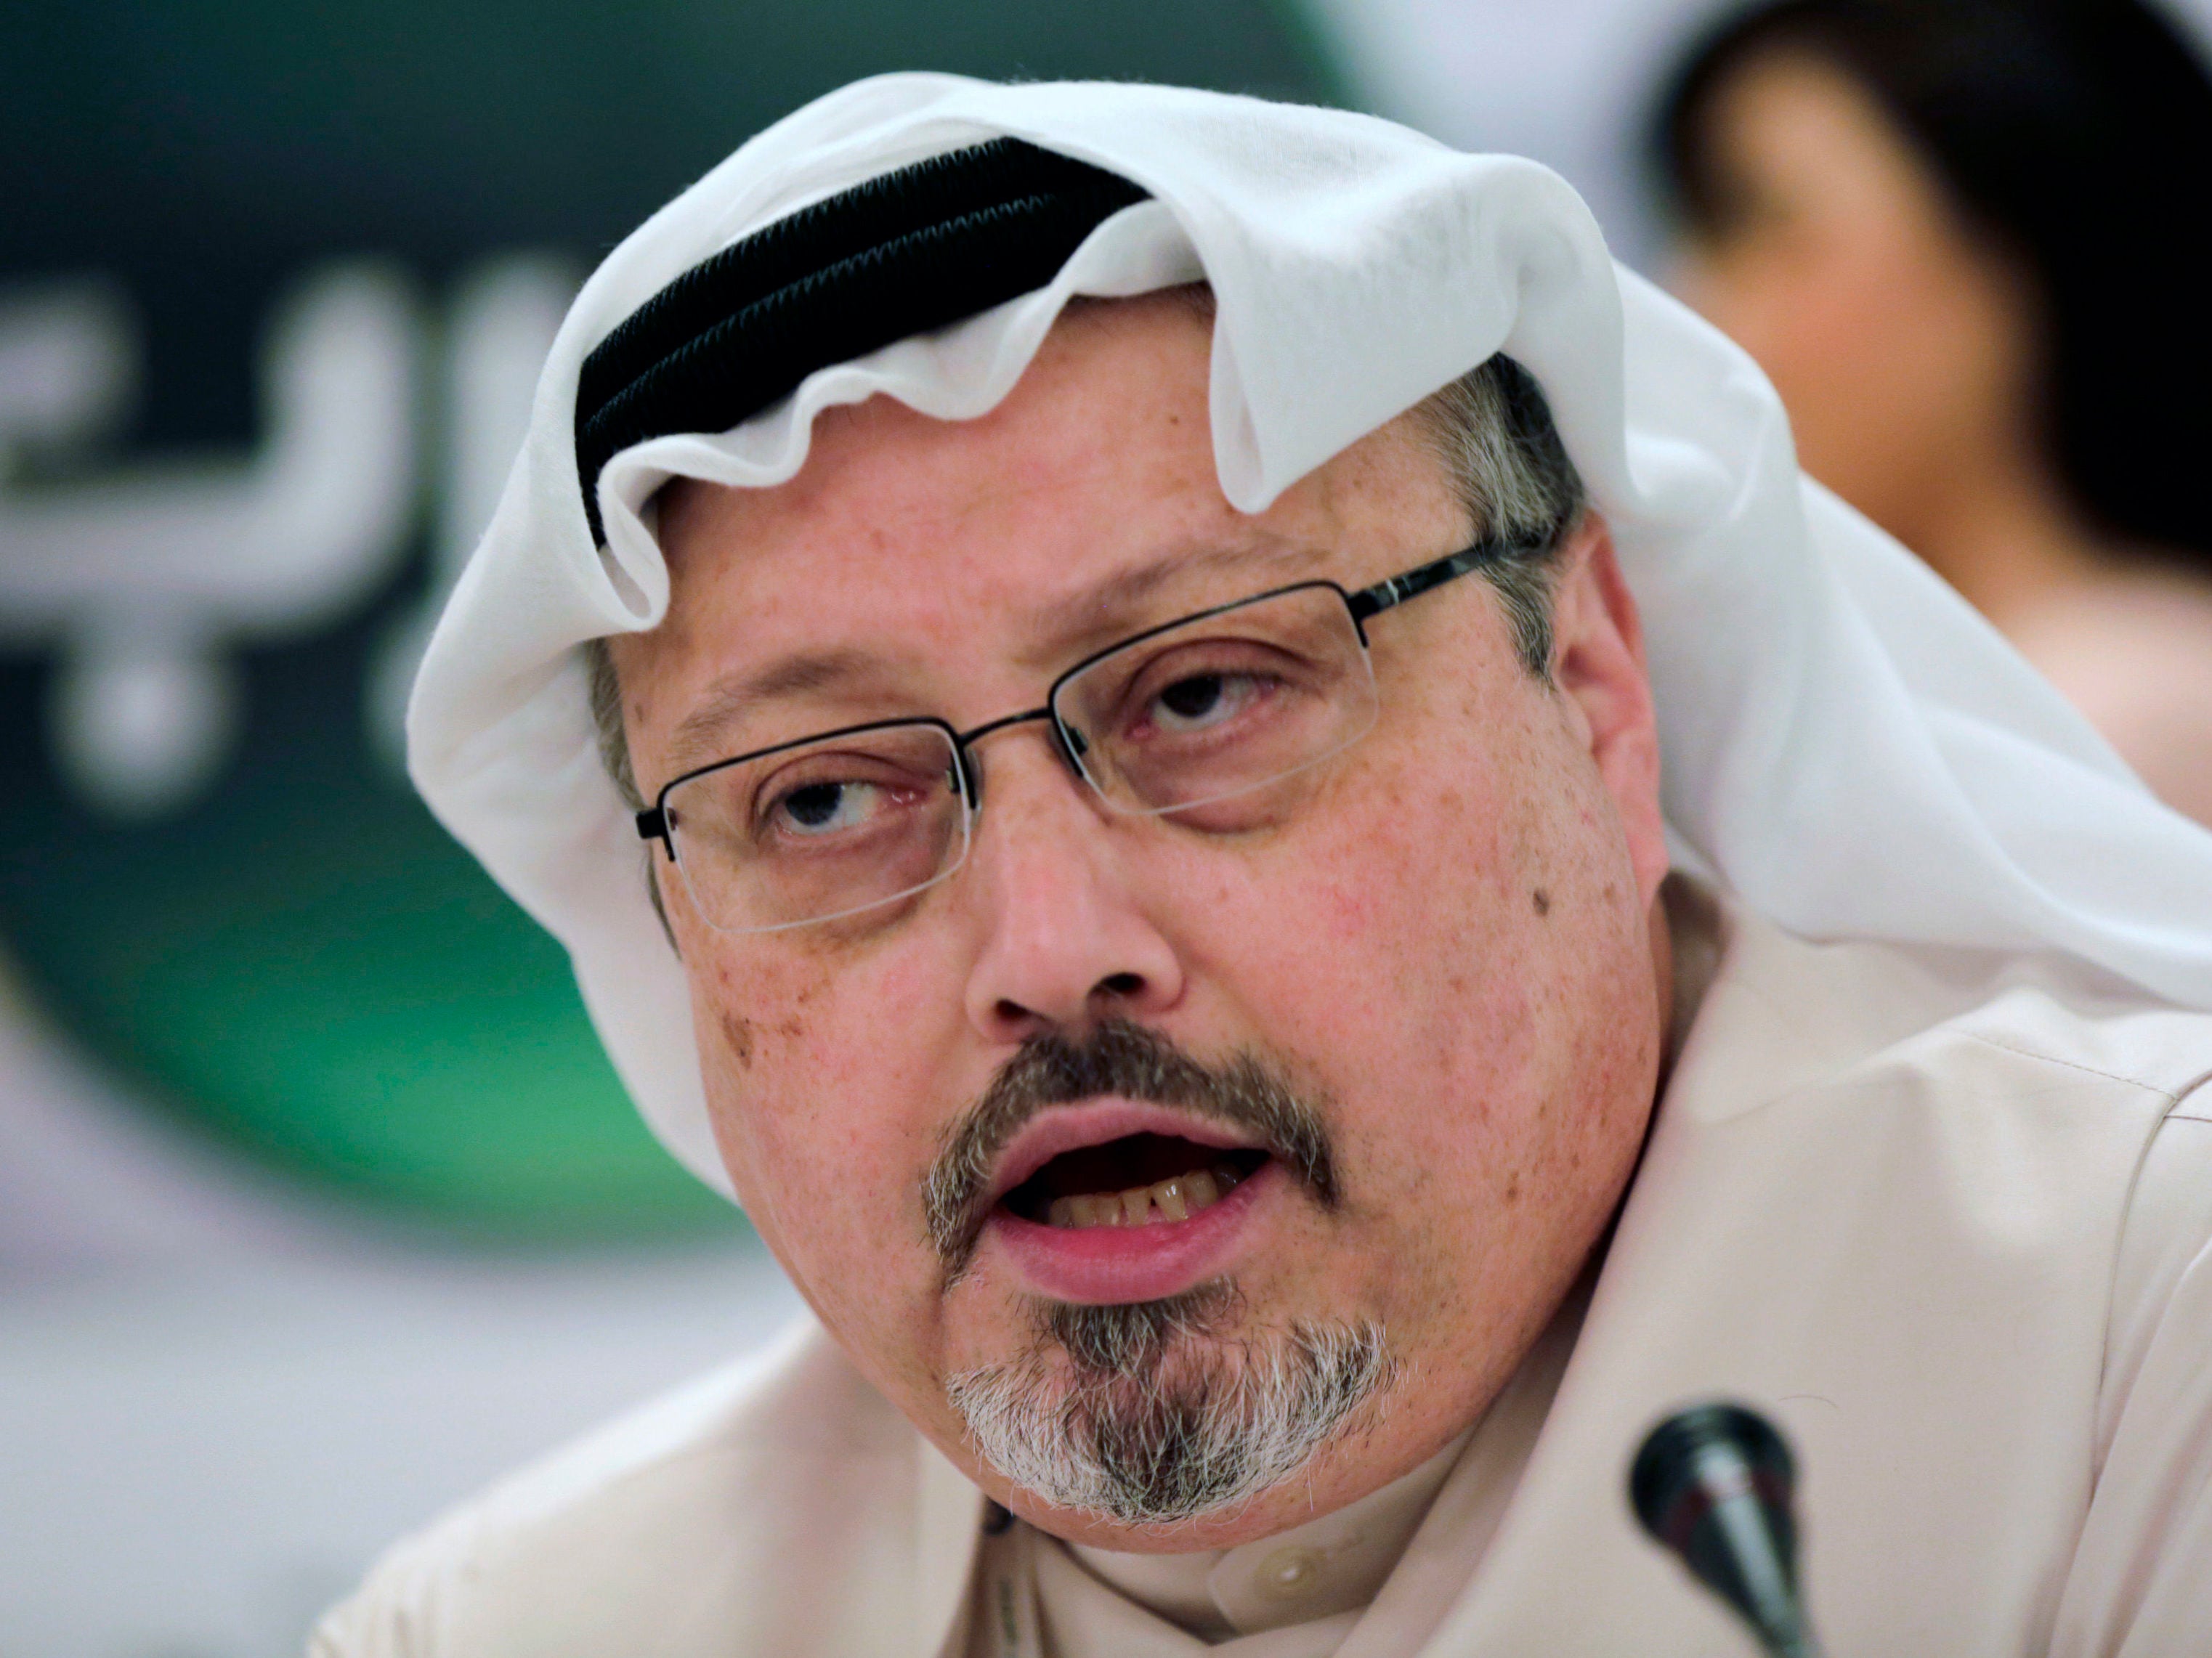 UN expert defends report into Jamal Khashoggi killing after Saudi criticism